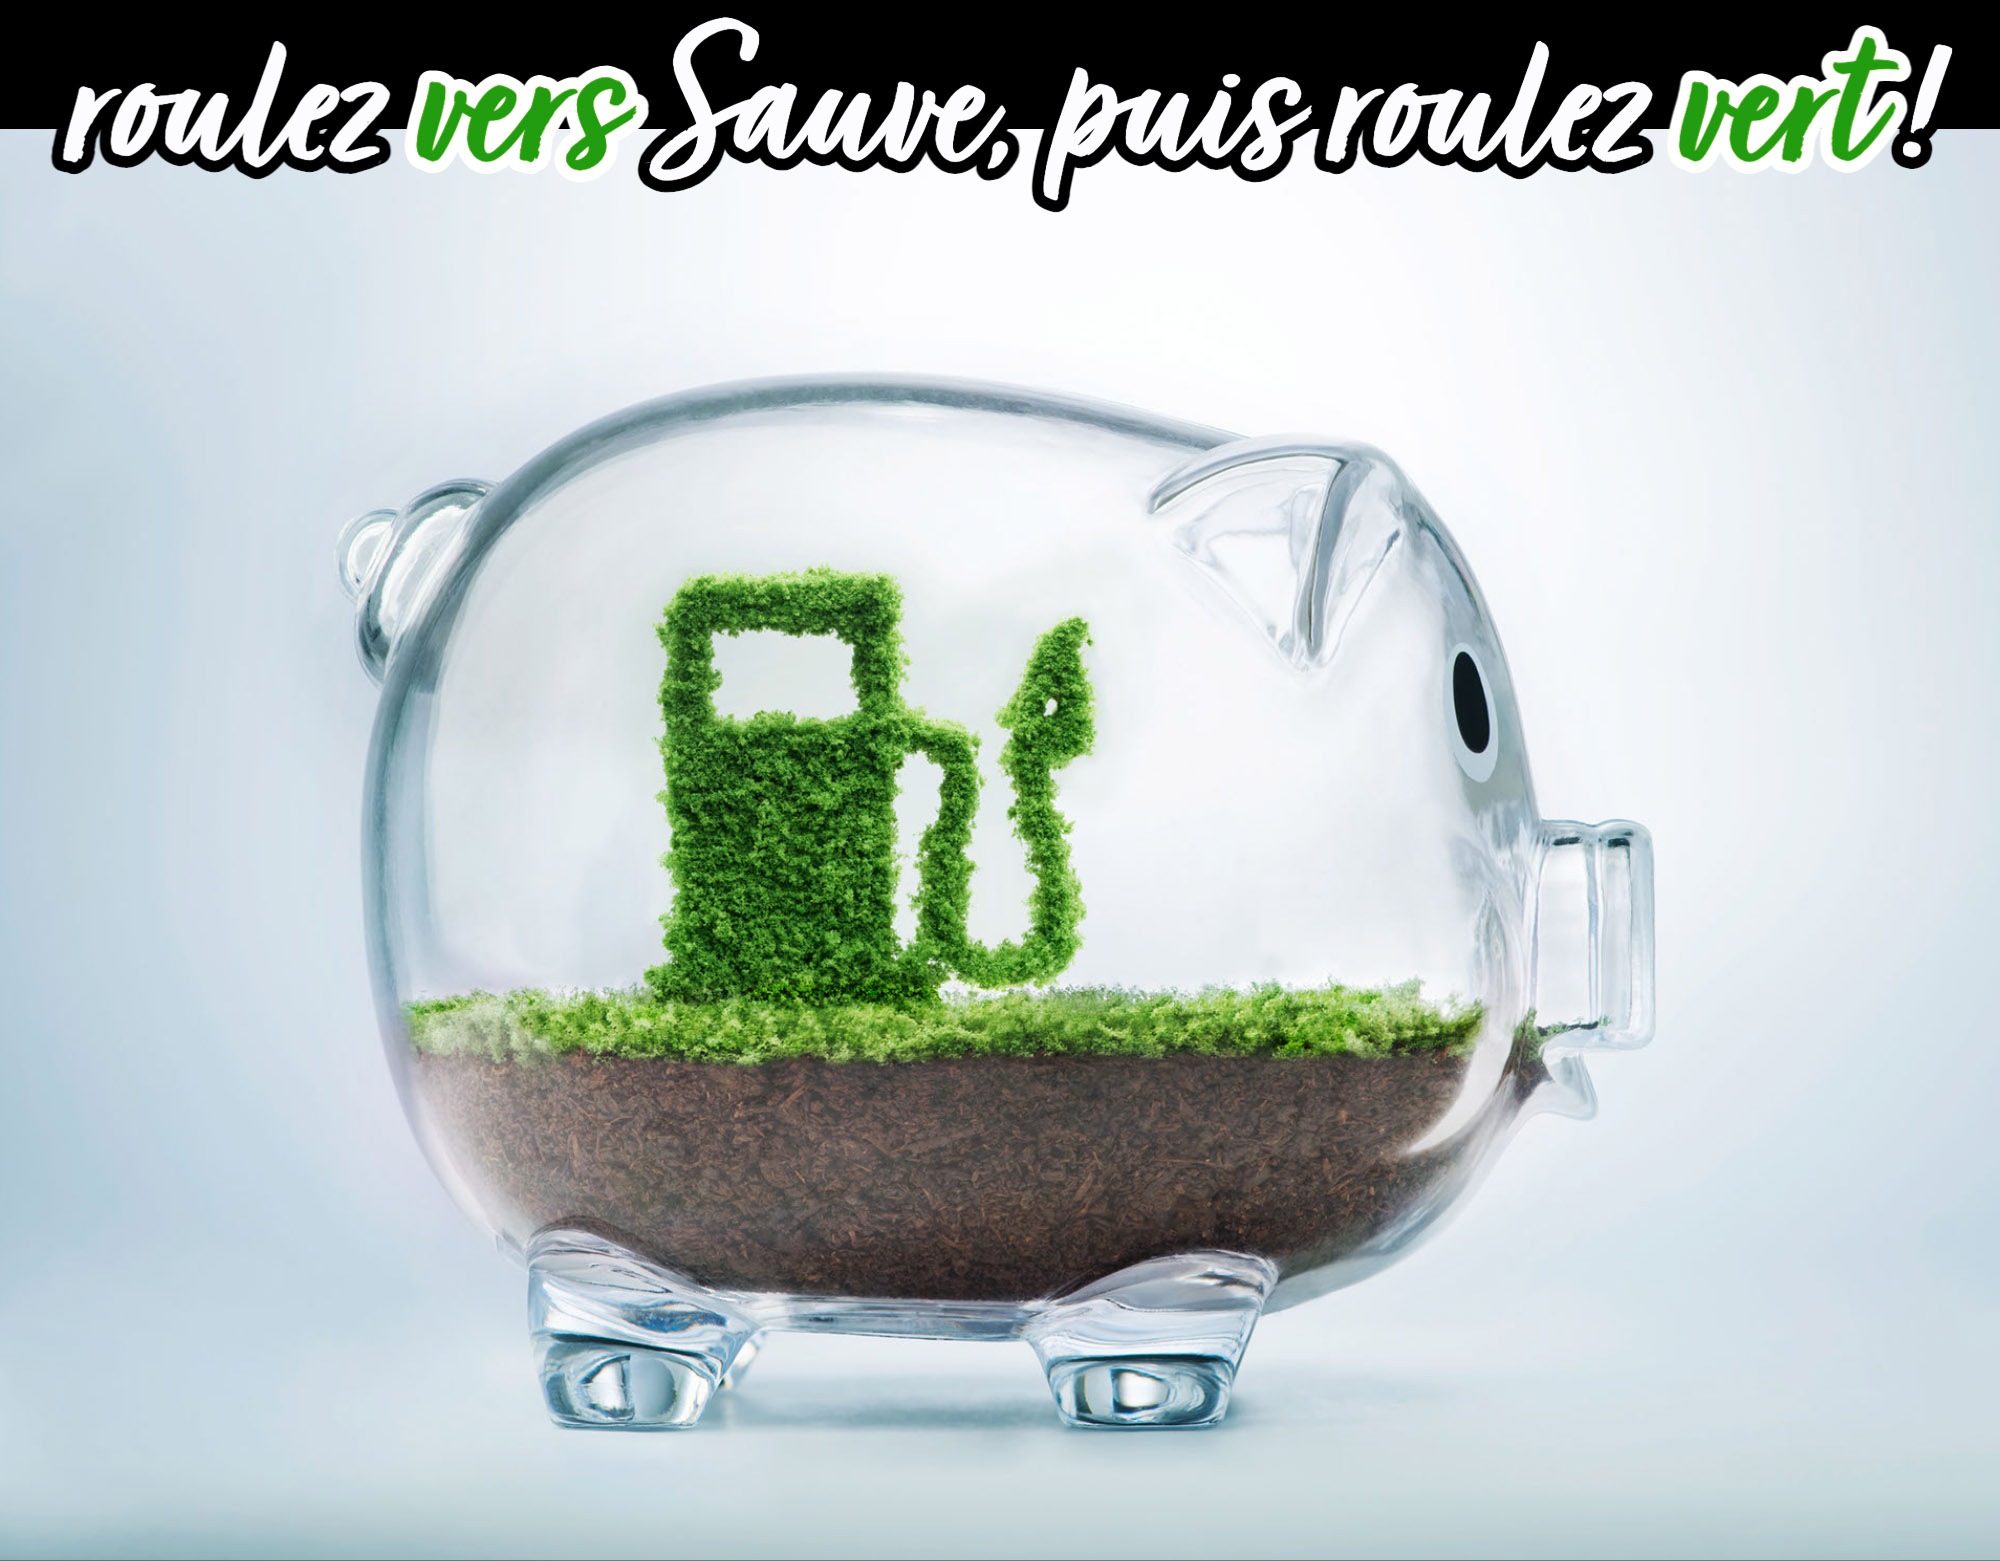 Roulez vers Sauve, puis roulez vert ! Découvrez nos solutions de conversion au bioéthanol !